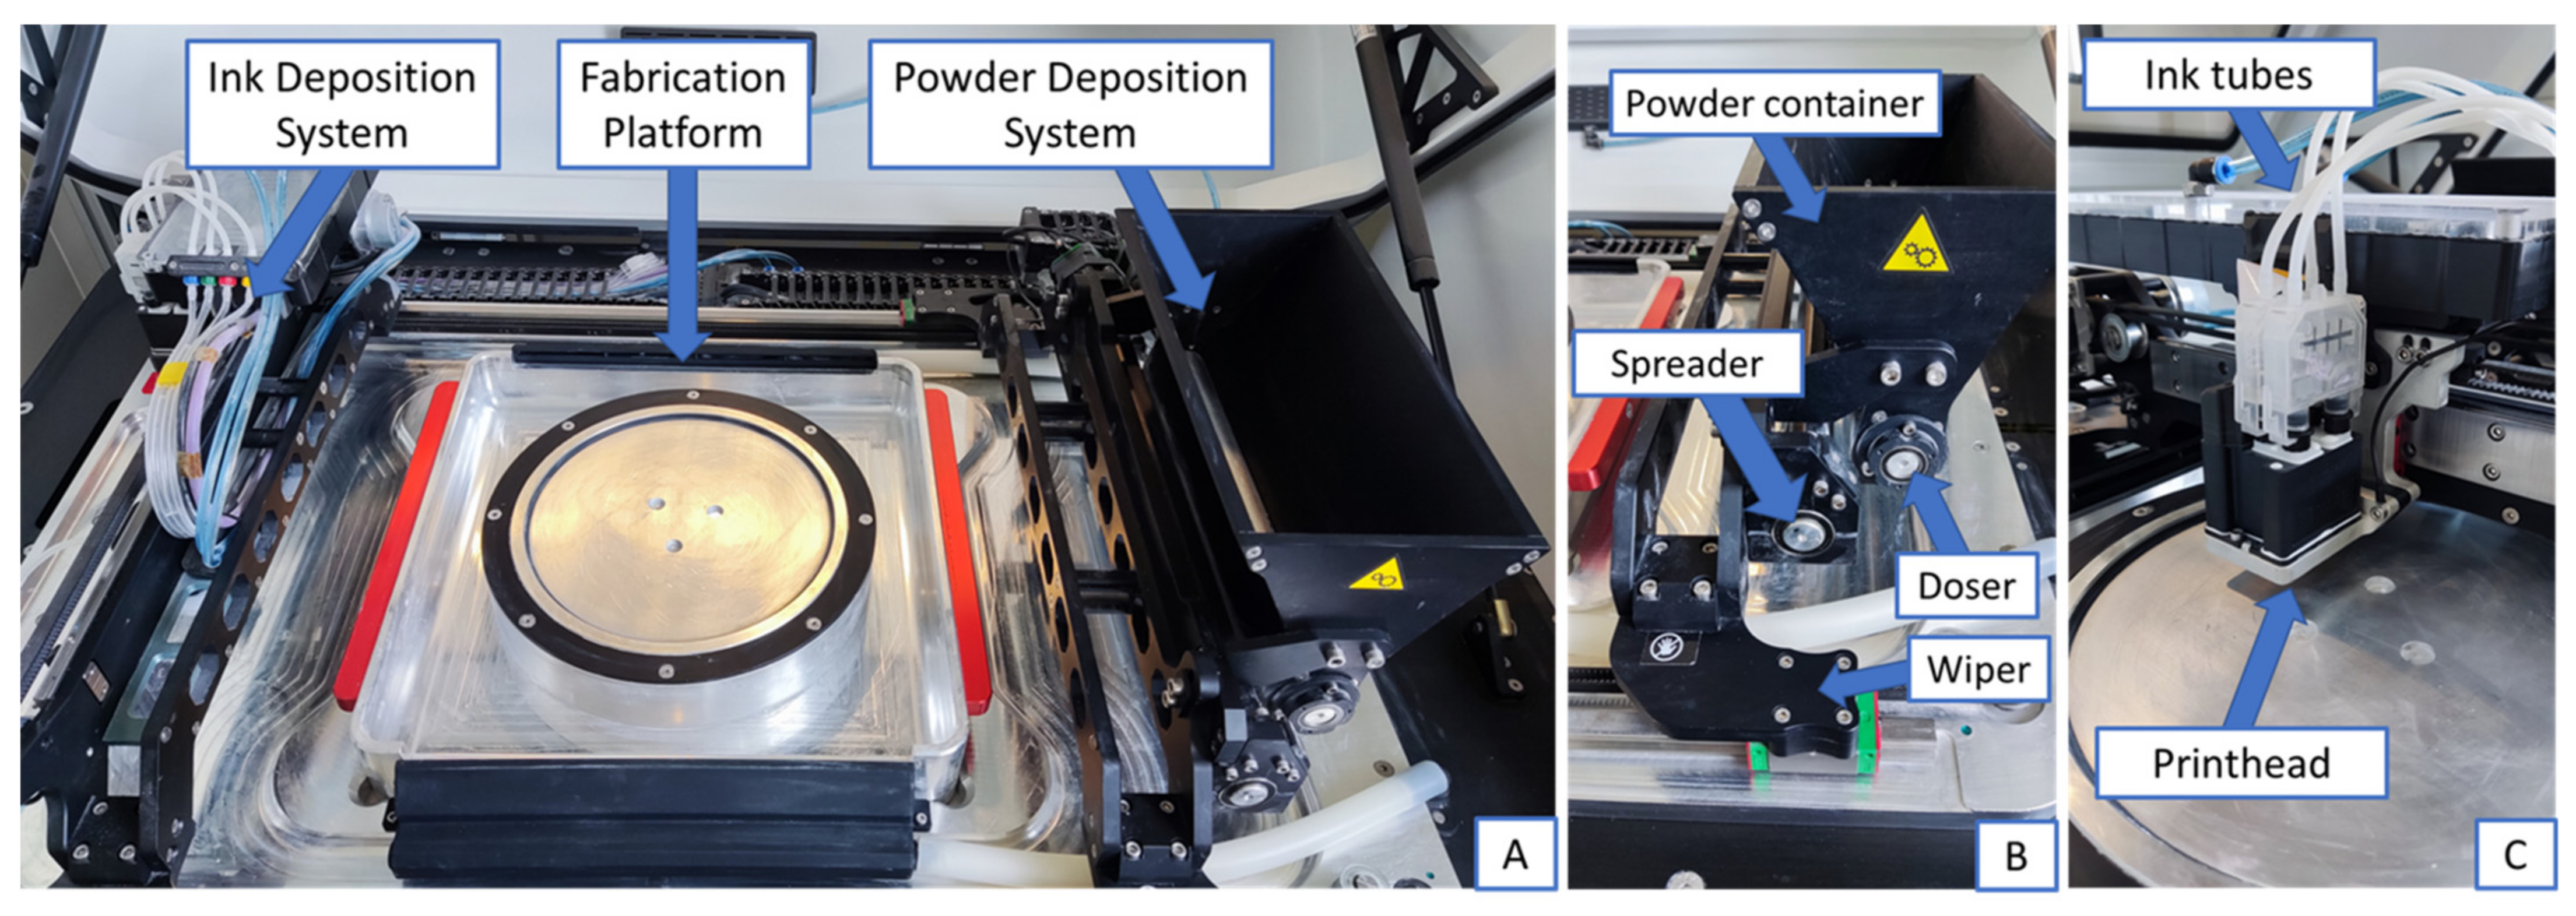 TU Graz engineers create metal 3D printer that uses LED instead of